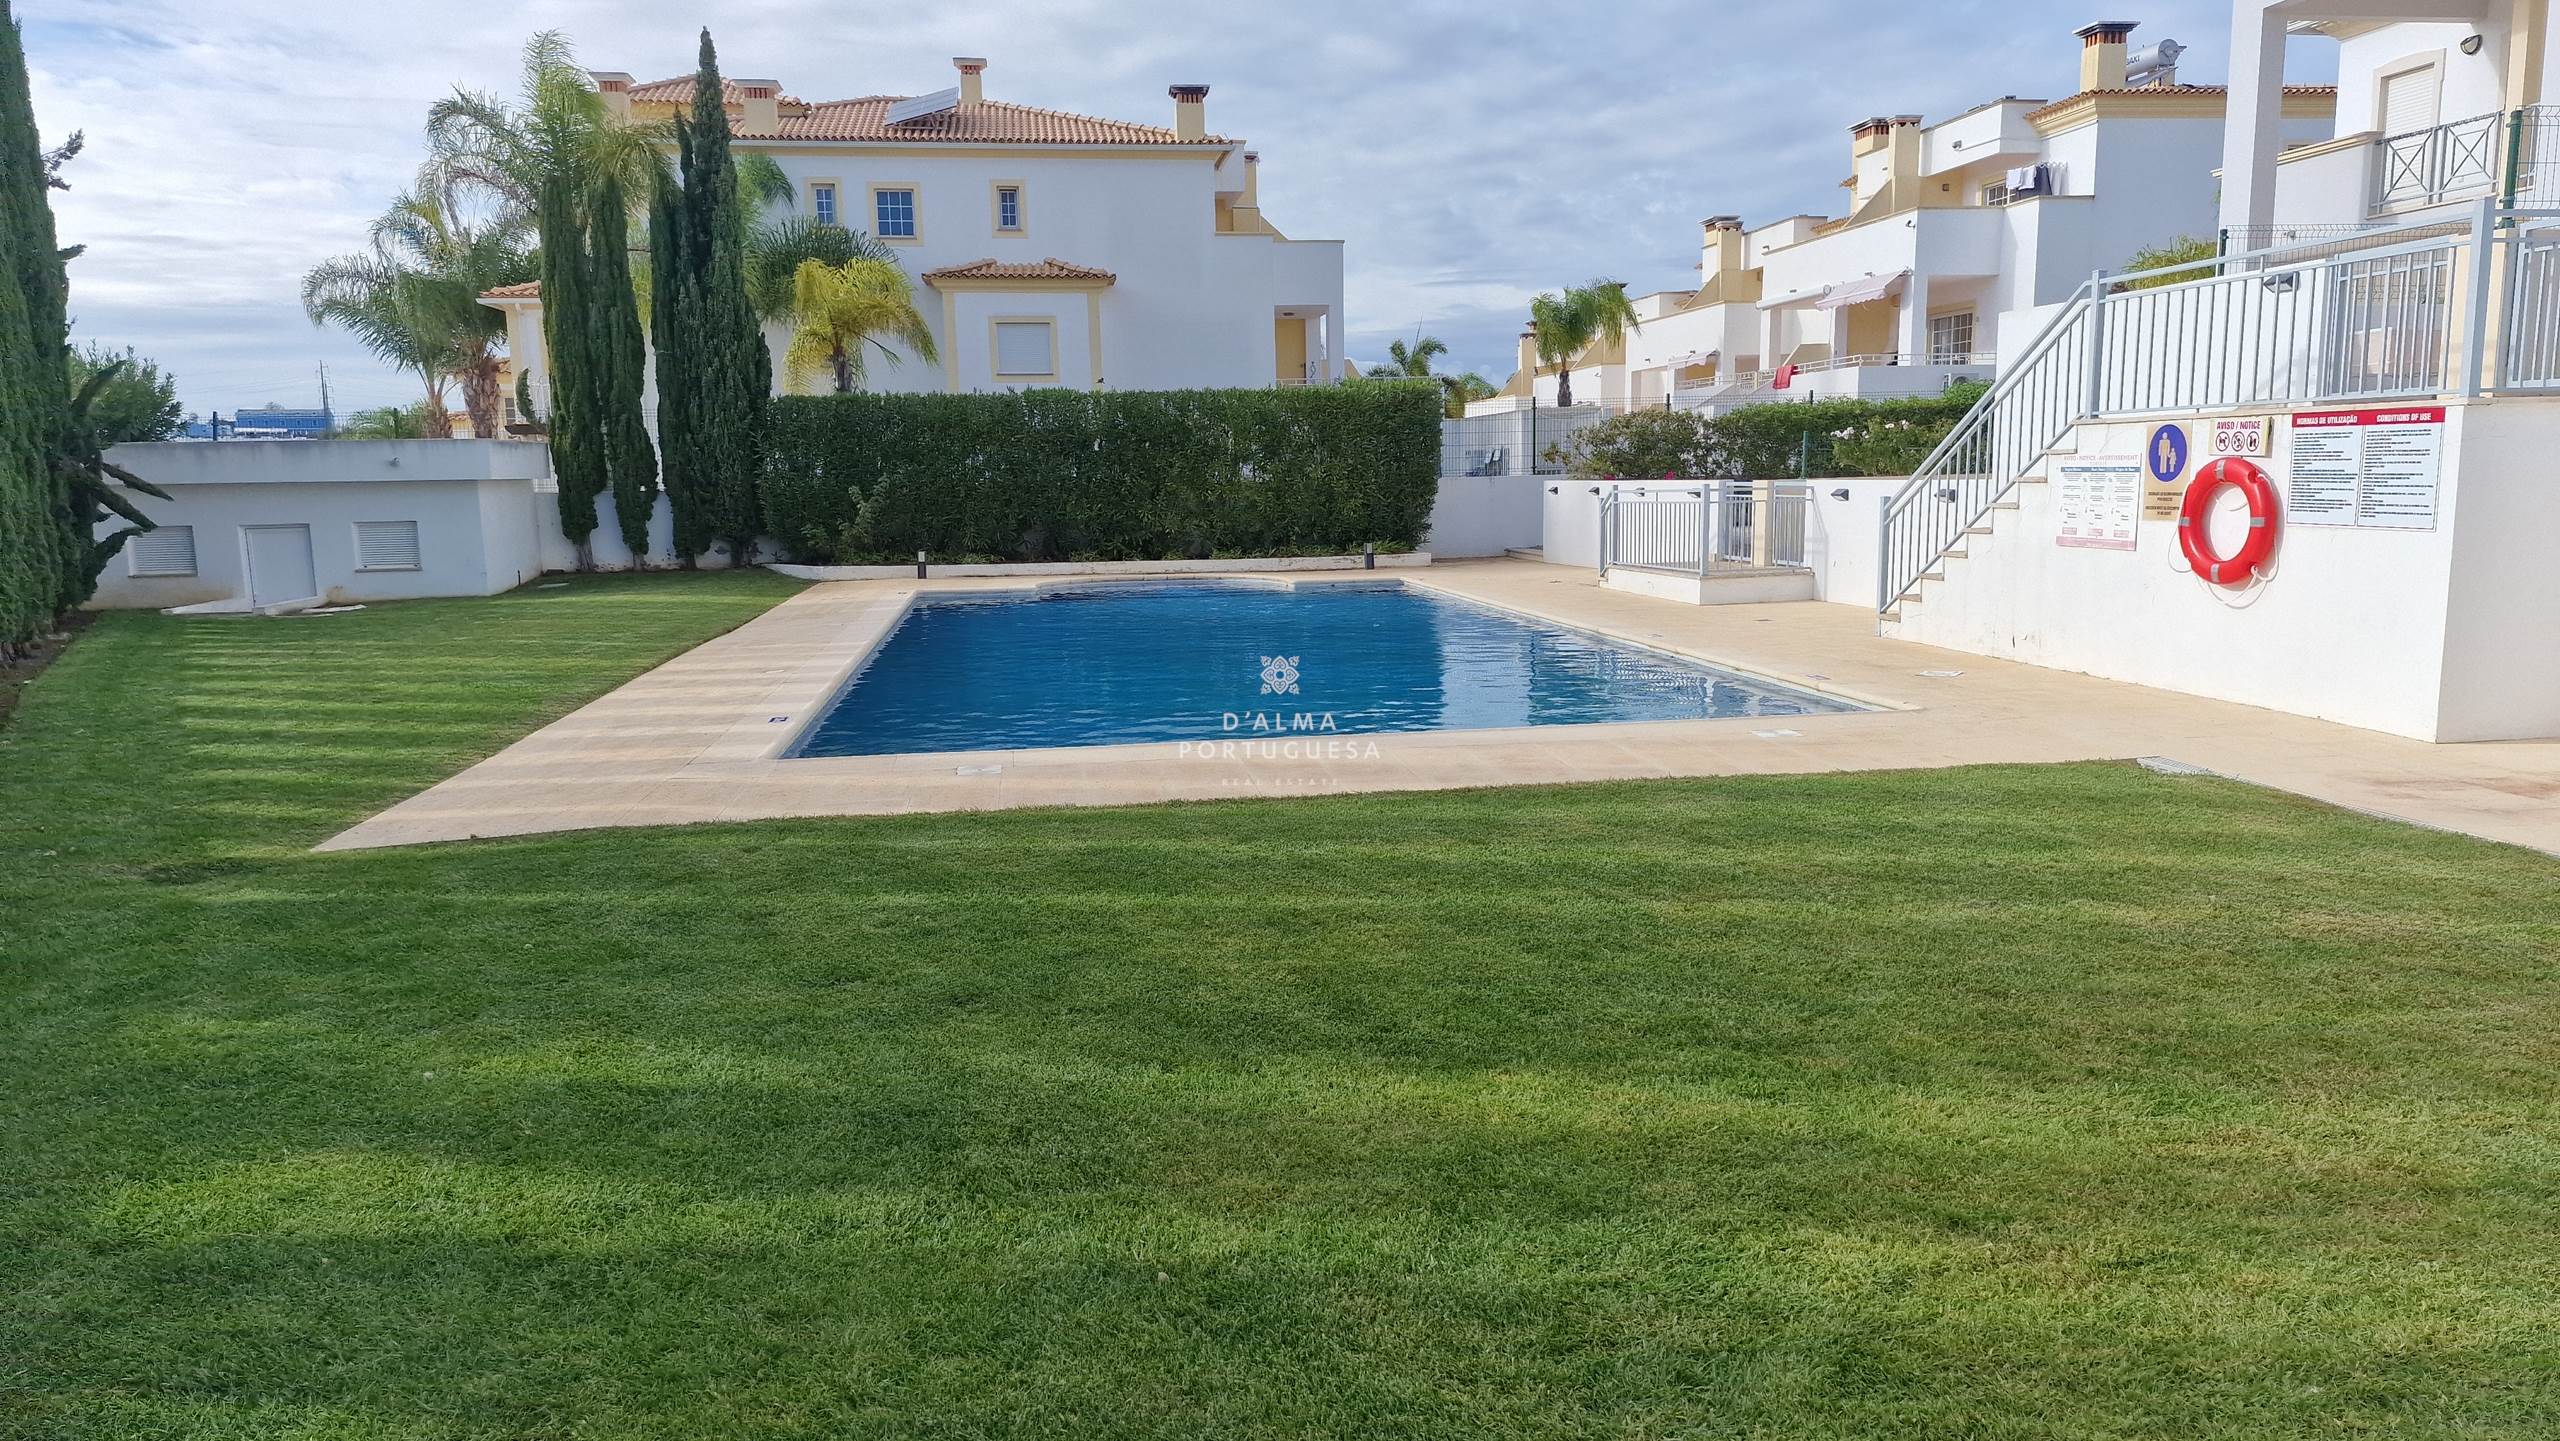 Villa de 3 dormitorios,villa en condominio,villa con piscina,villa con estacionamiento,villa en Shona Calma